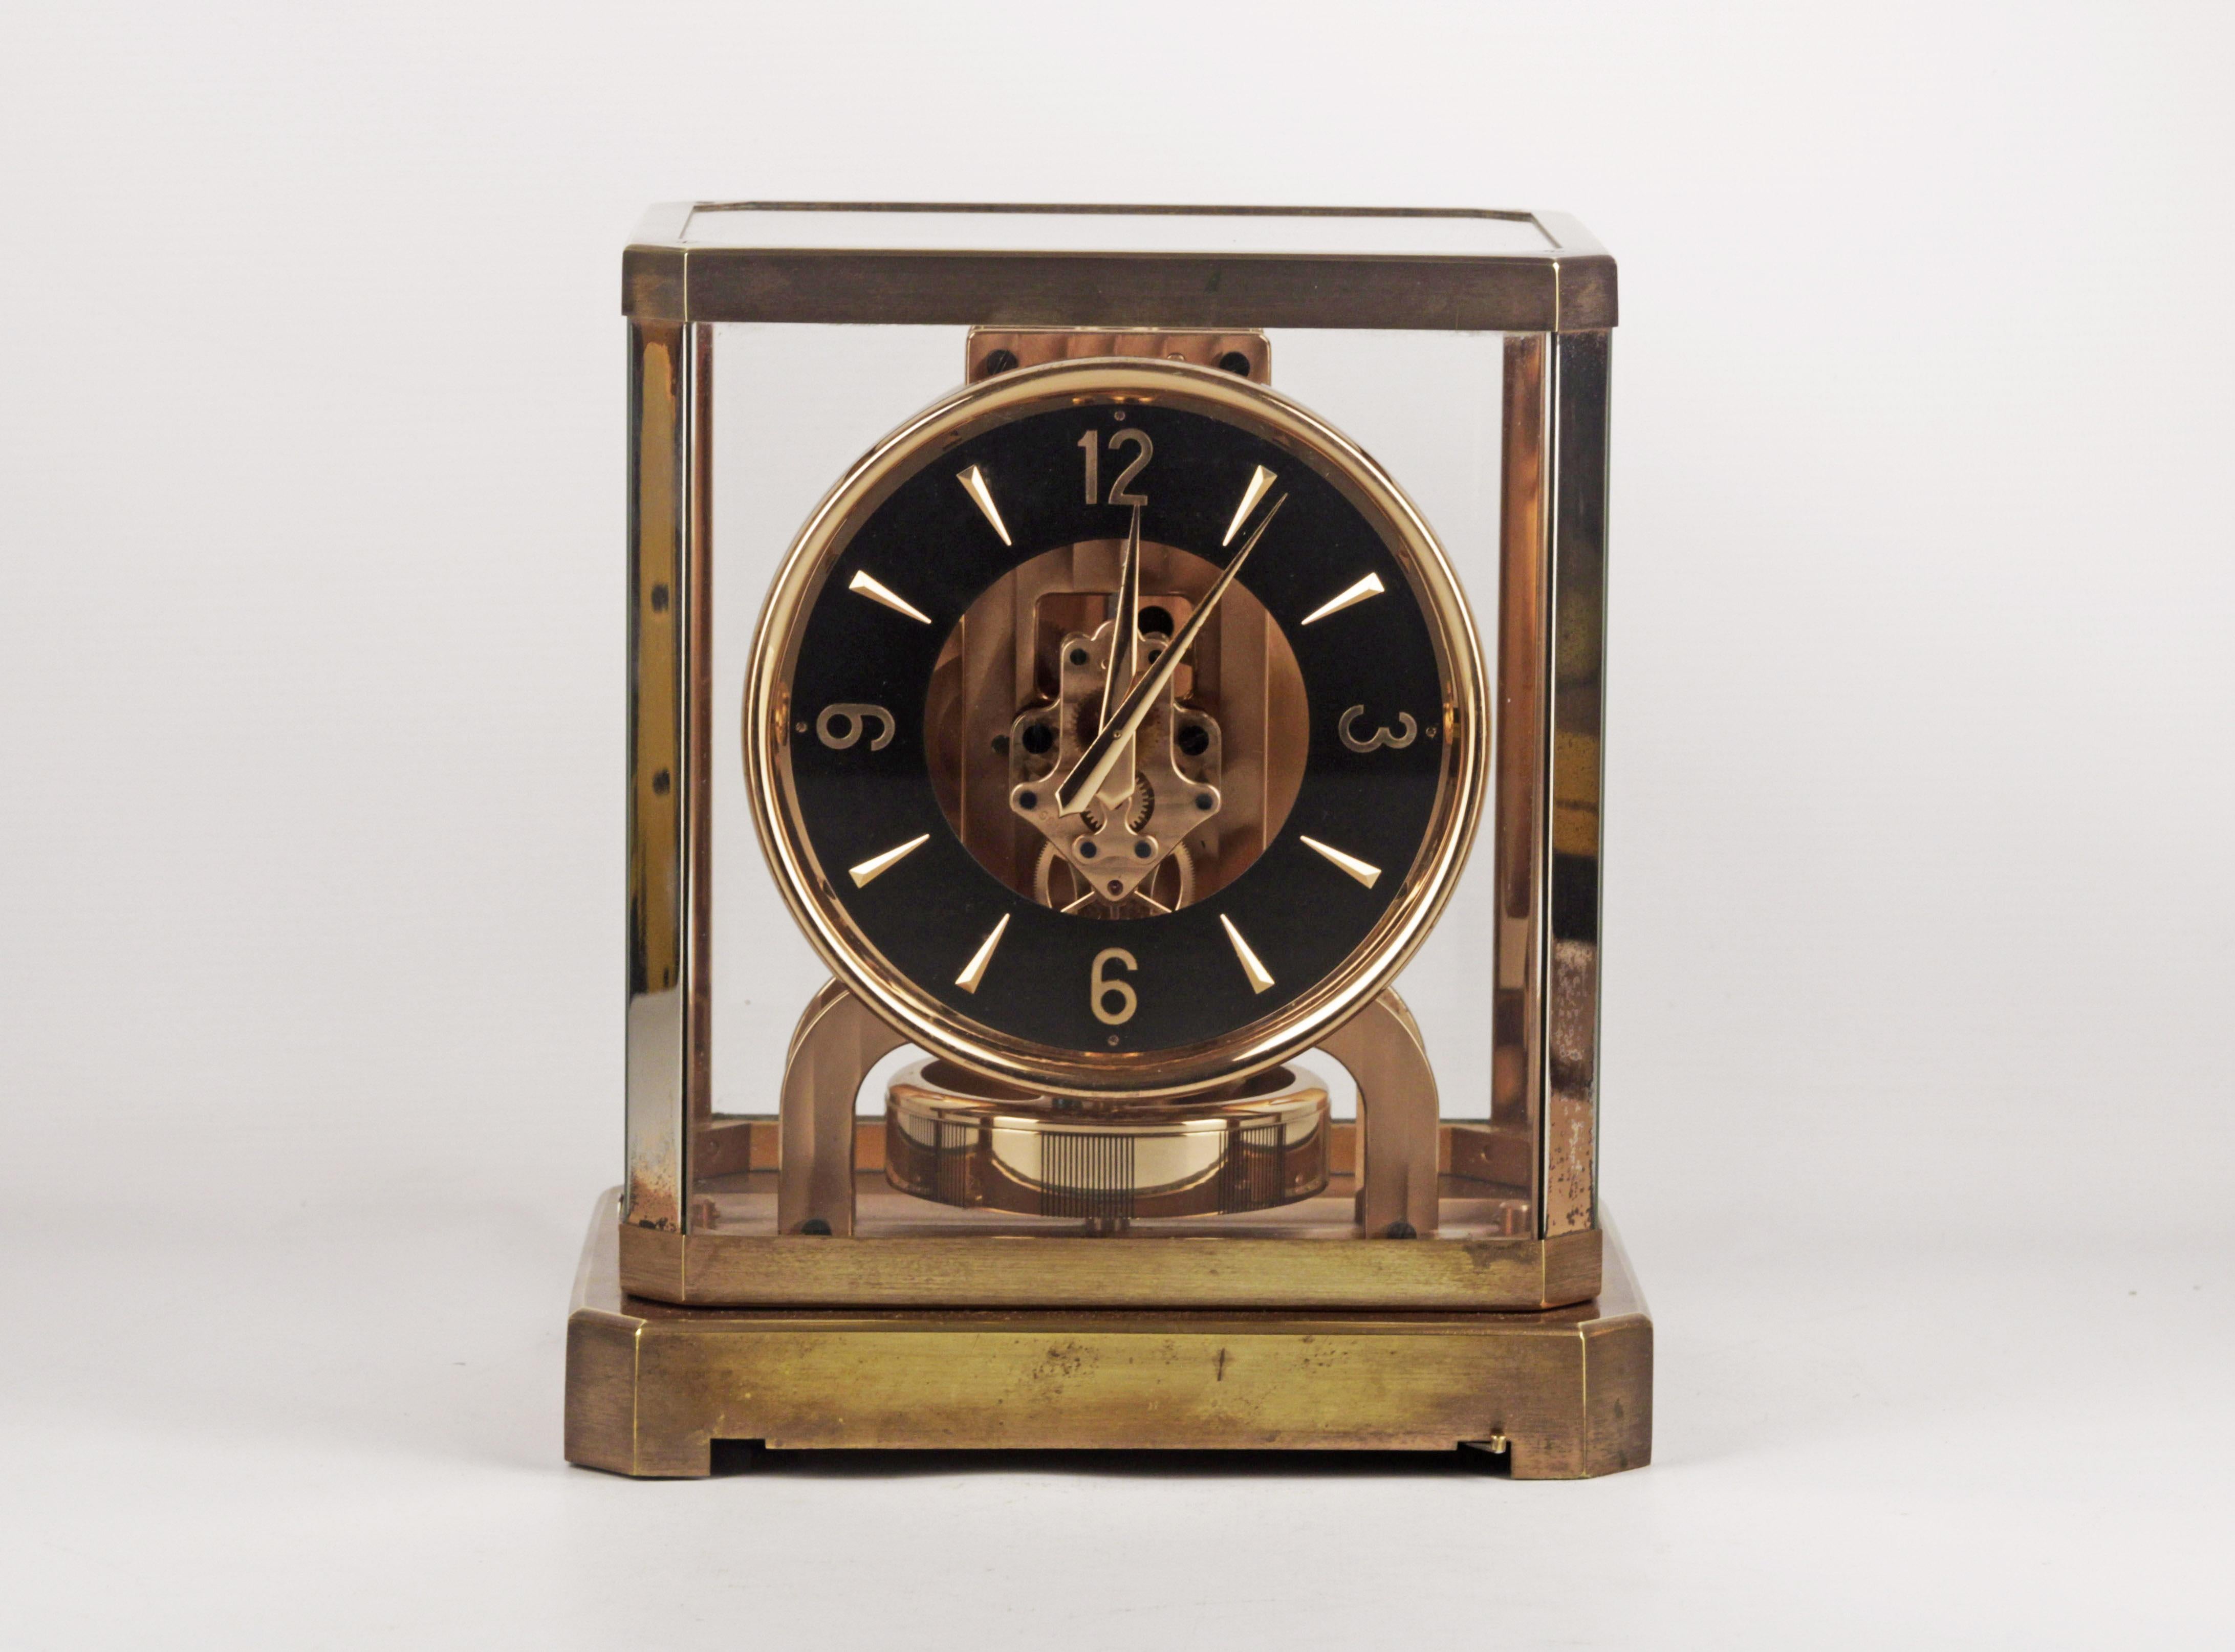 Horloge de table Atmos Jaeger-LeCoultre rare
horloge de table avec mouvement perpétuel
inventé par jean reutter en 1928
Cette montre est datée de 1940 et est plaquée en rose.
l'heure tourne
Il a le cadran noir d'origine
La plaque présente une